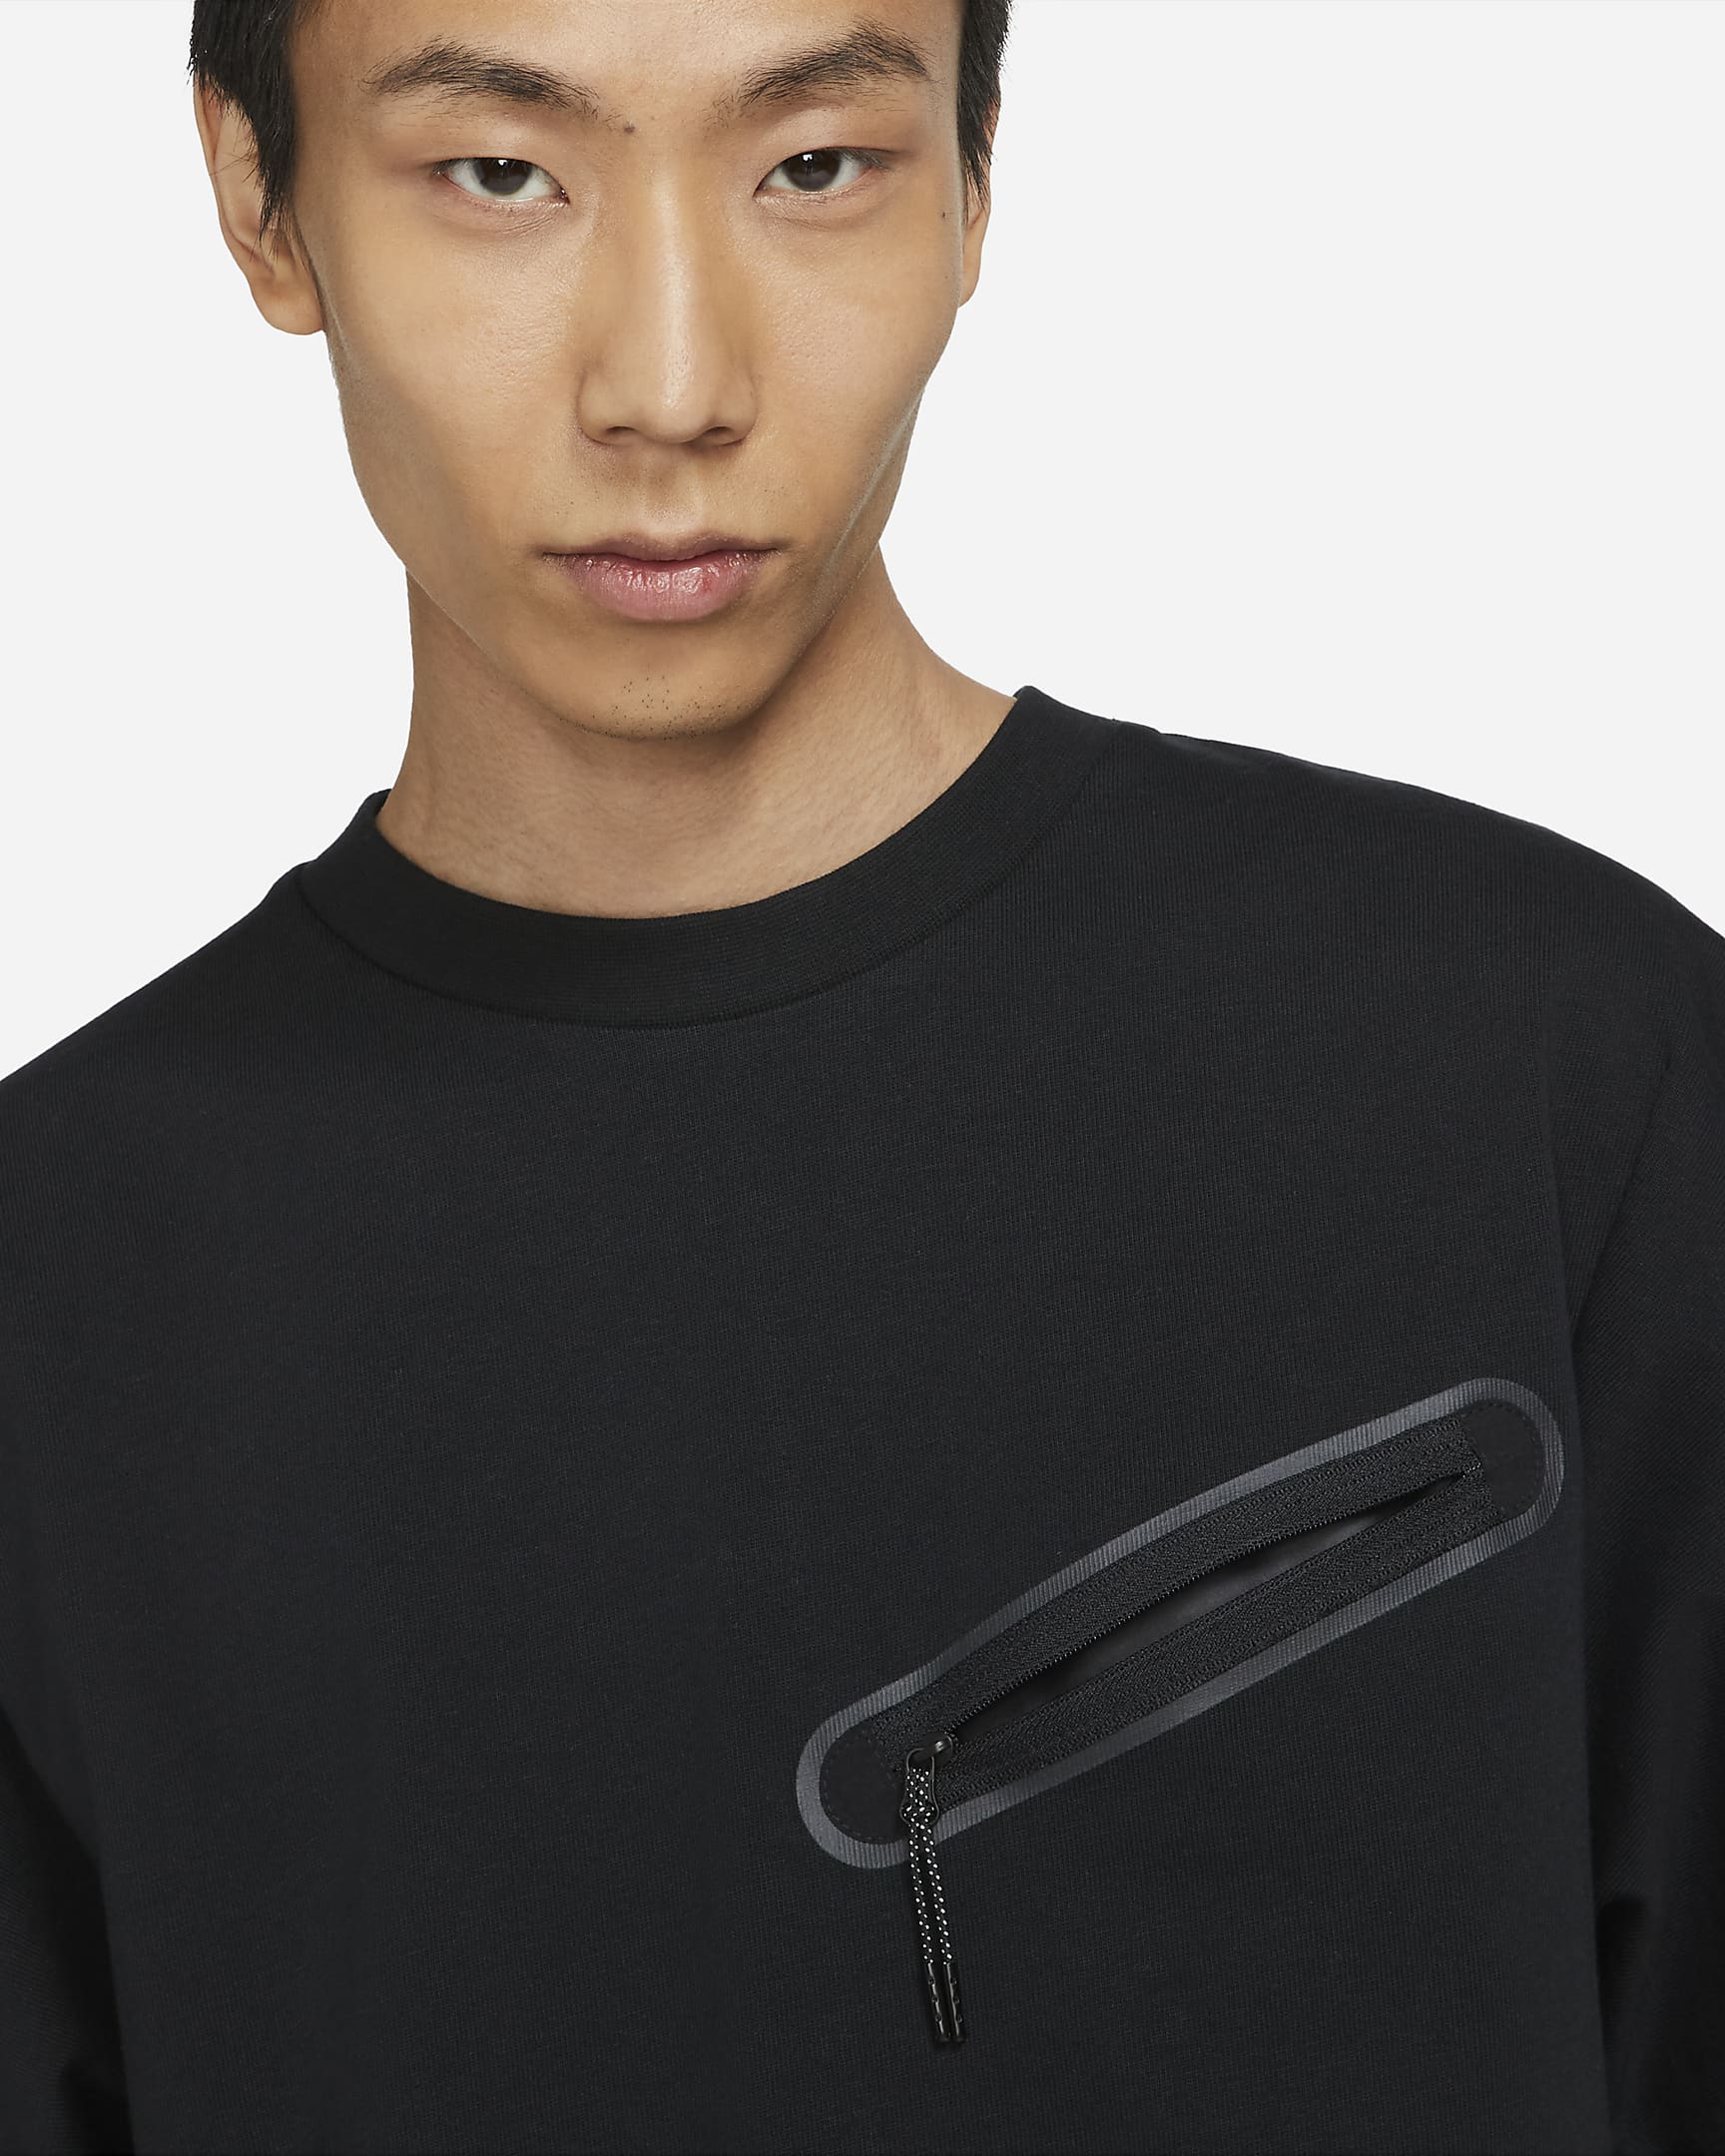 Nike Sportswear Men's Short-Sleeve Knit Top. Nike JP